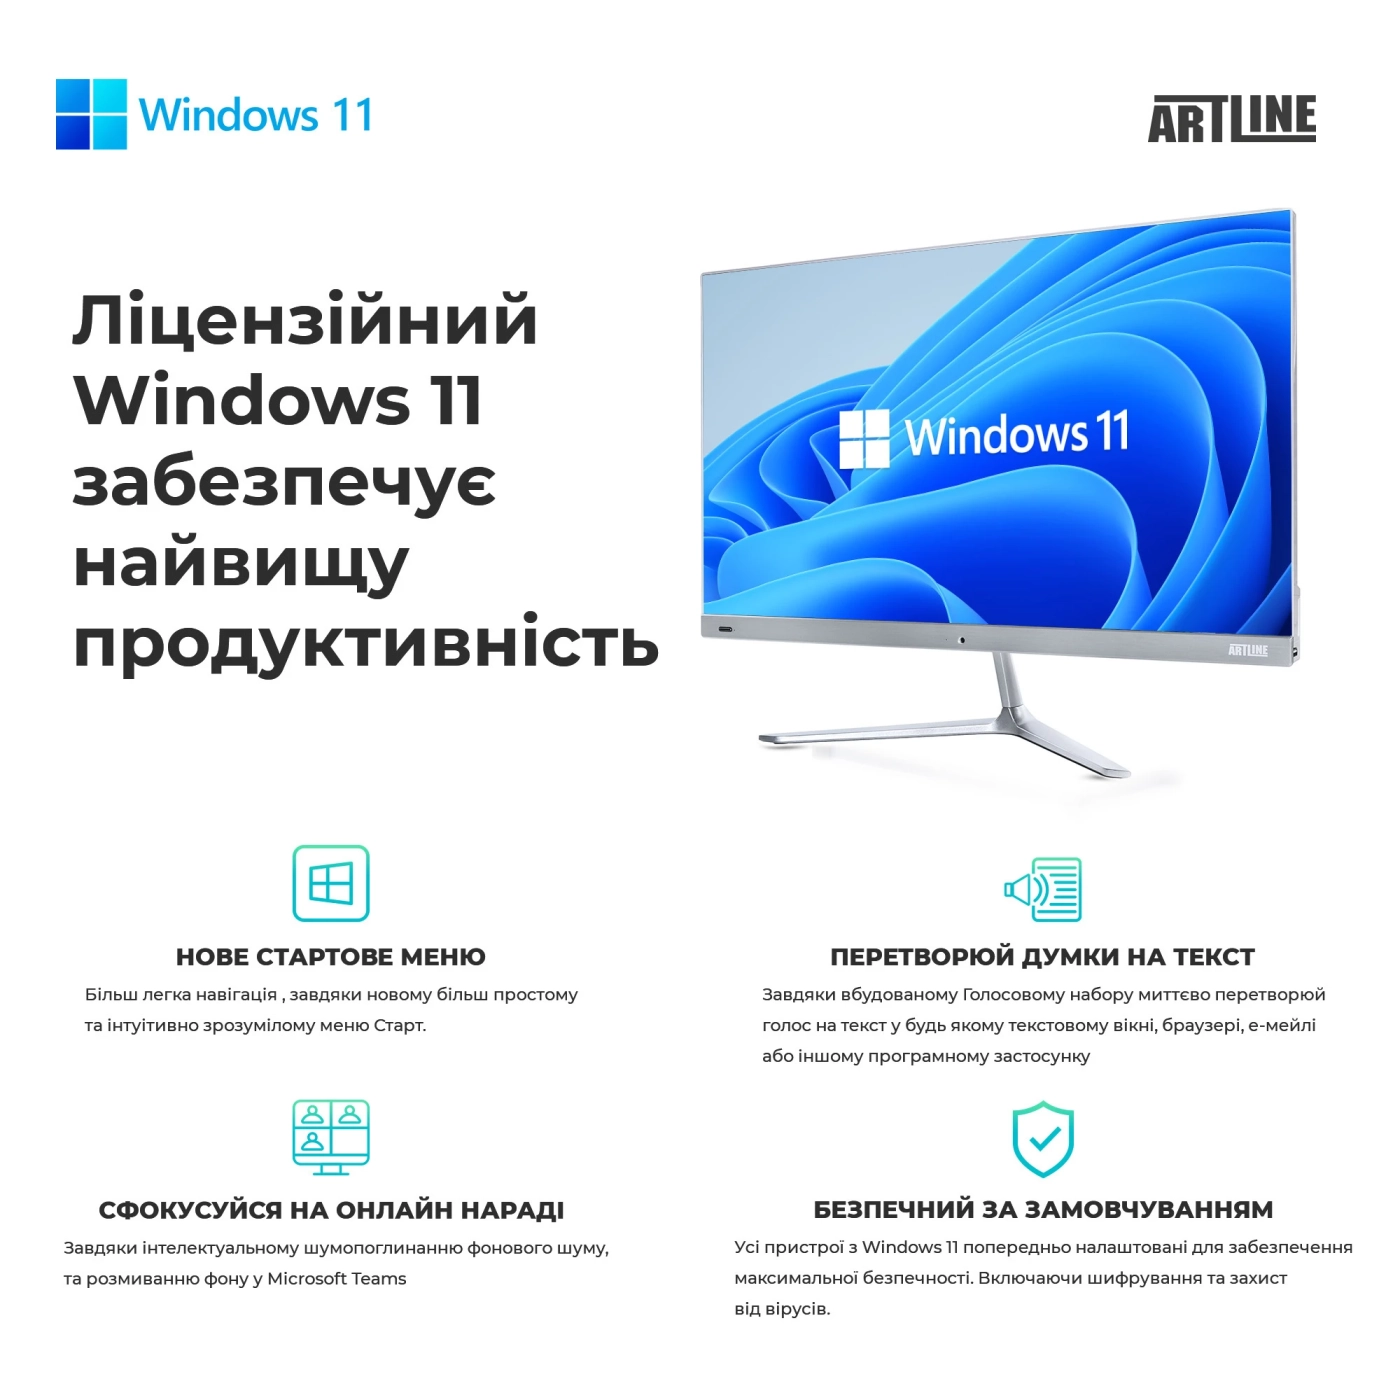 Купить Рабочая станция ARTLINE WorkStation W75 Windows 11 Pro (W75v53Win) - фото 8